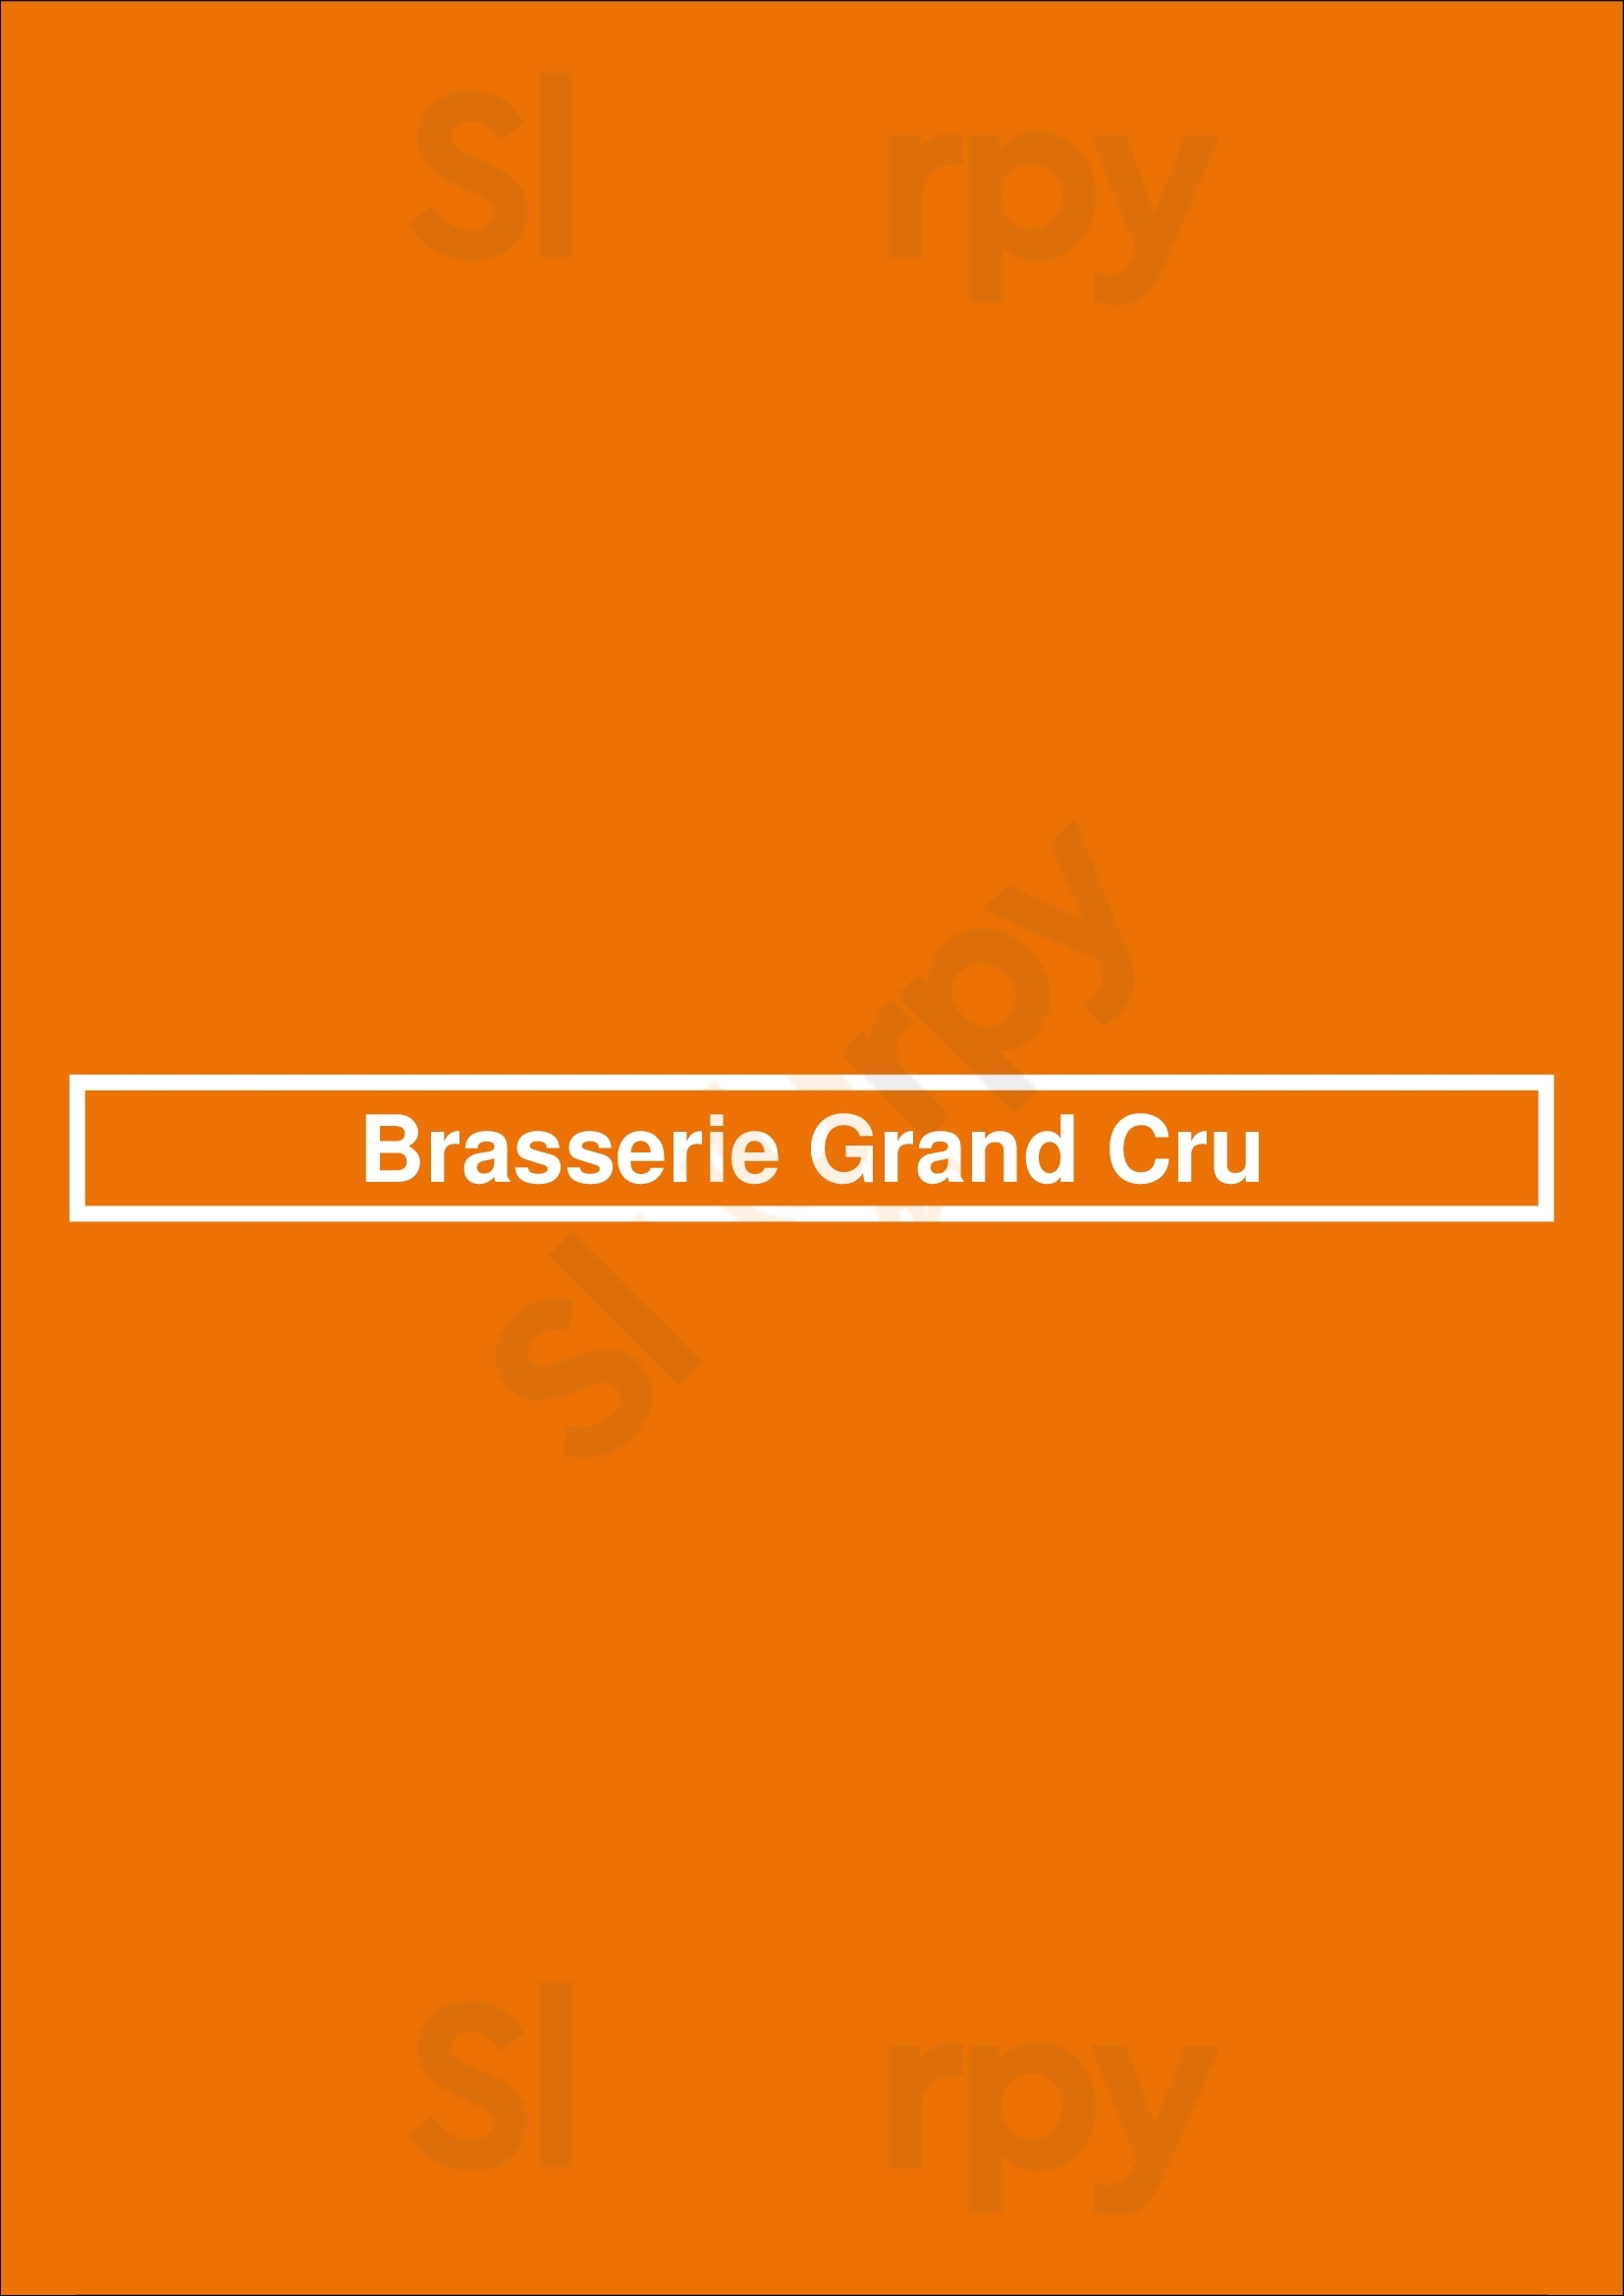 Brasserie Grand Cru Bruges Menu - 1